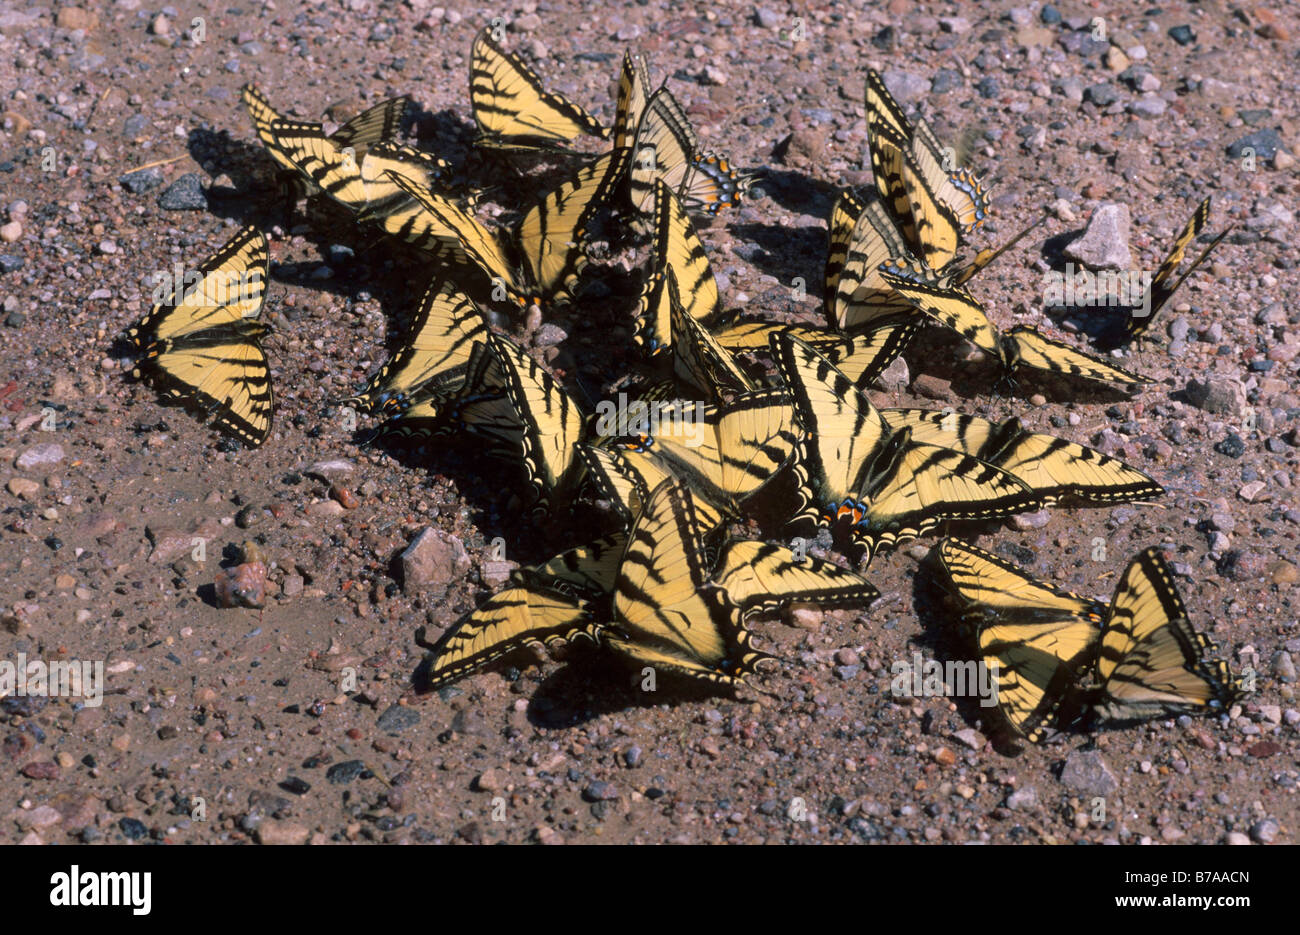 Il vecchio mondo coda forcuta (Papilio machaon) leccare i minerali dalla terra, Territori del Nord-ovest, Canada, America del Nord Foto Stock